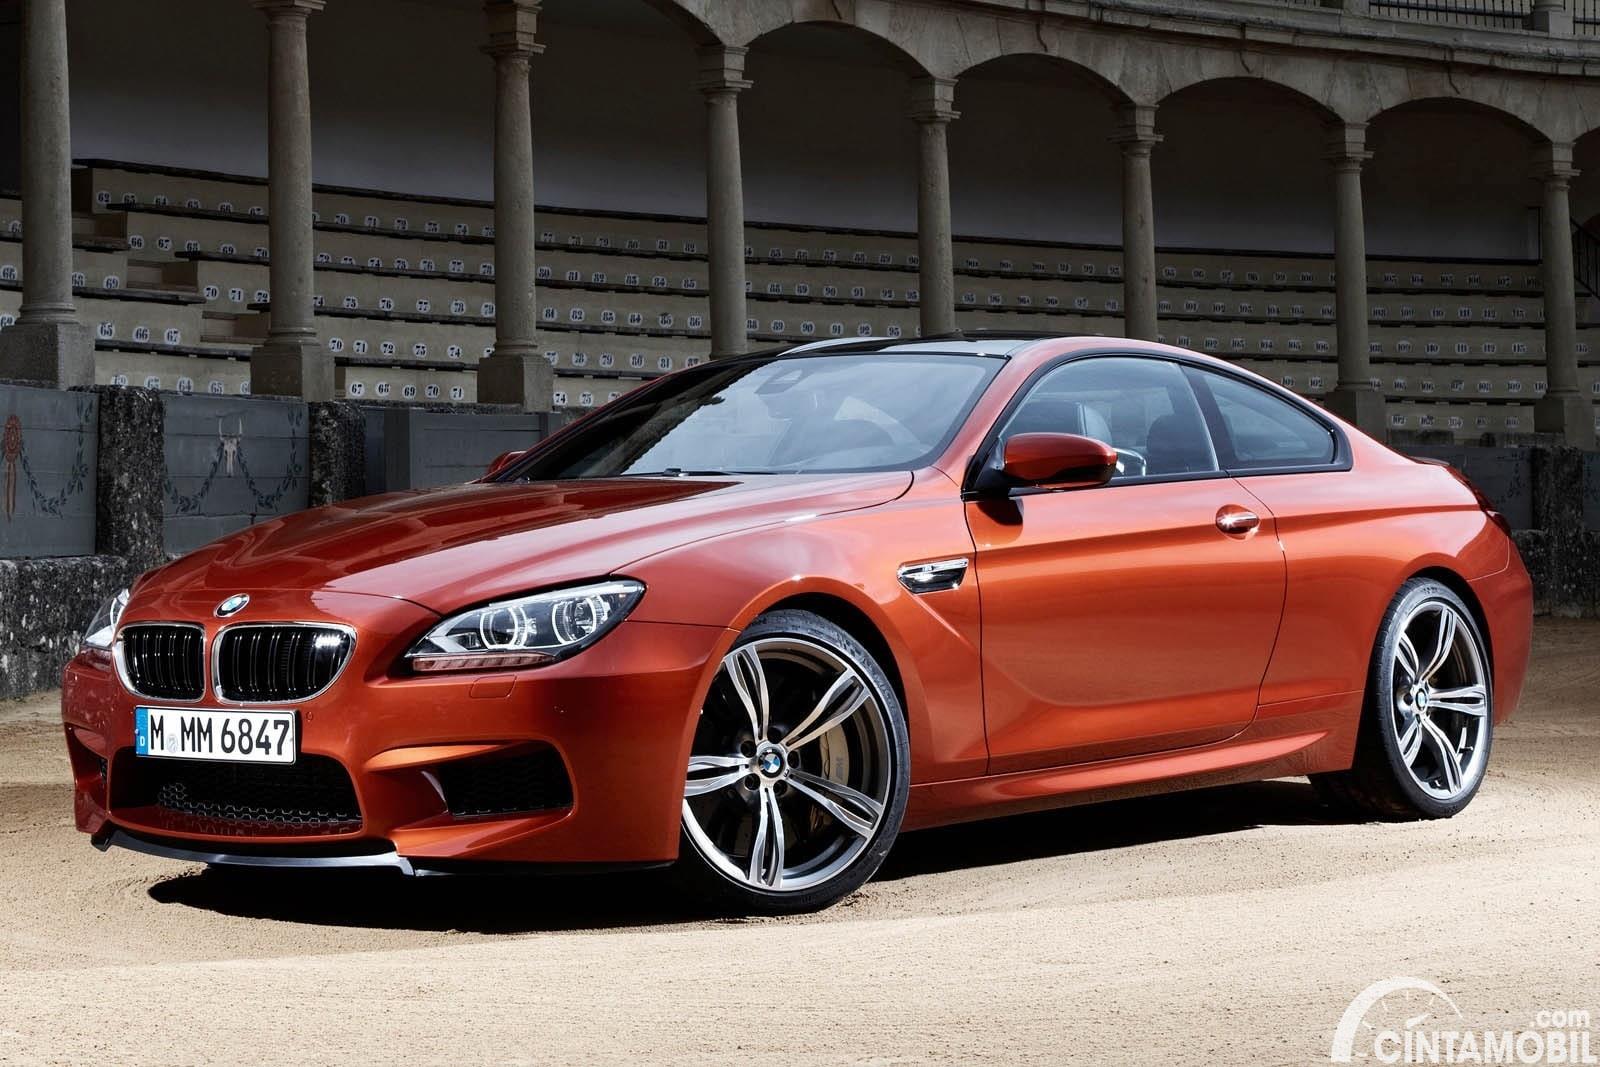 Gambar menunjukkan mobil BMW M6 2 door berwarna orange dilihat dari sisi depan